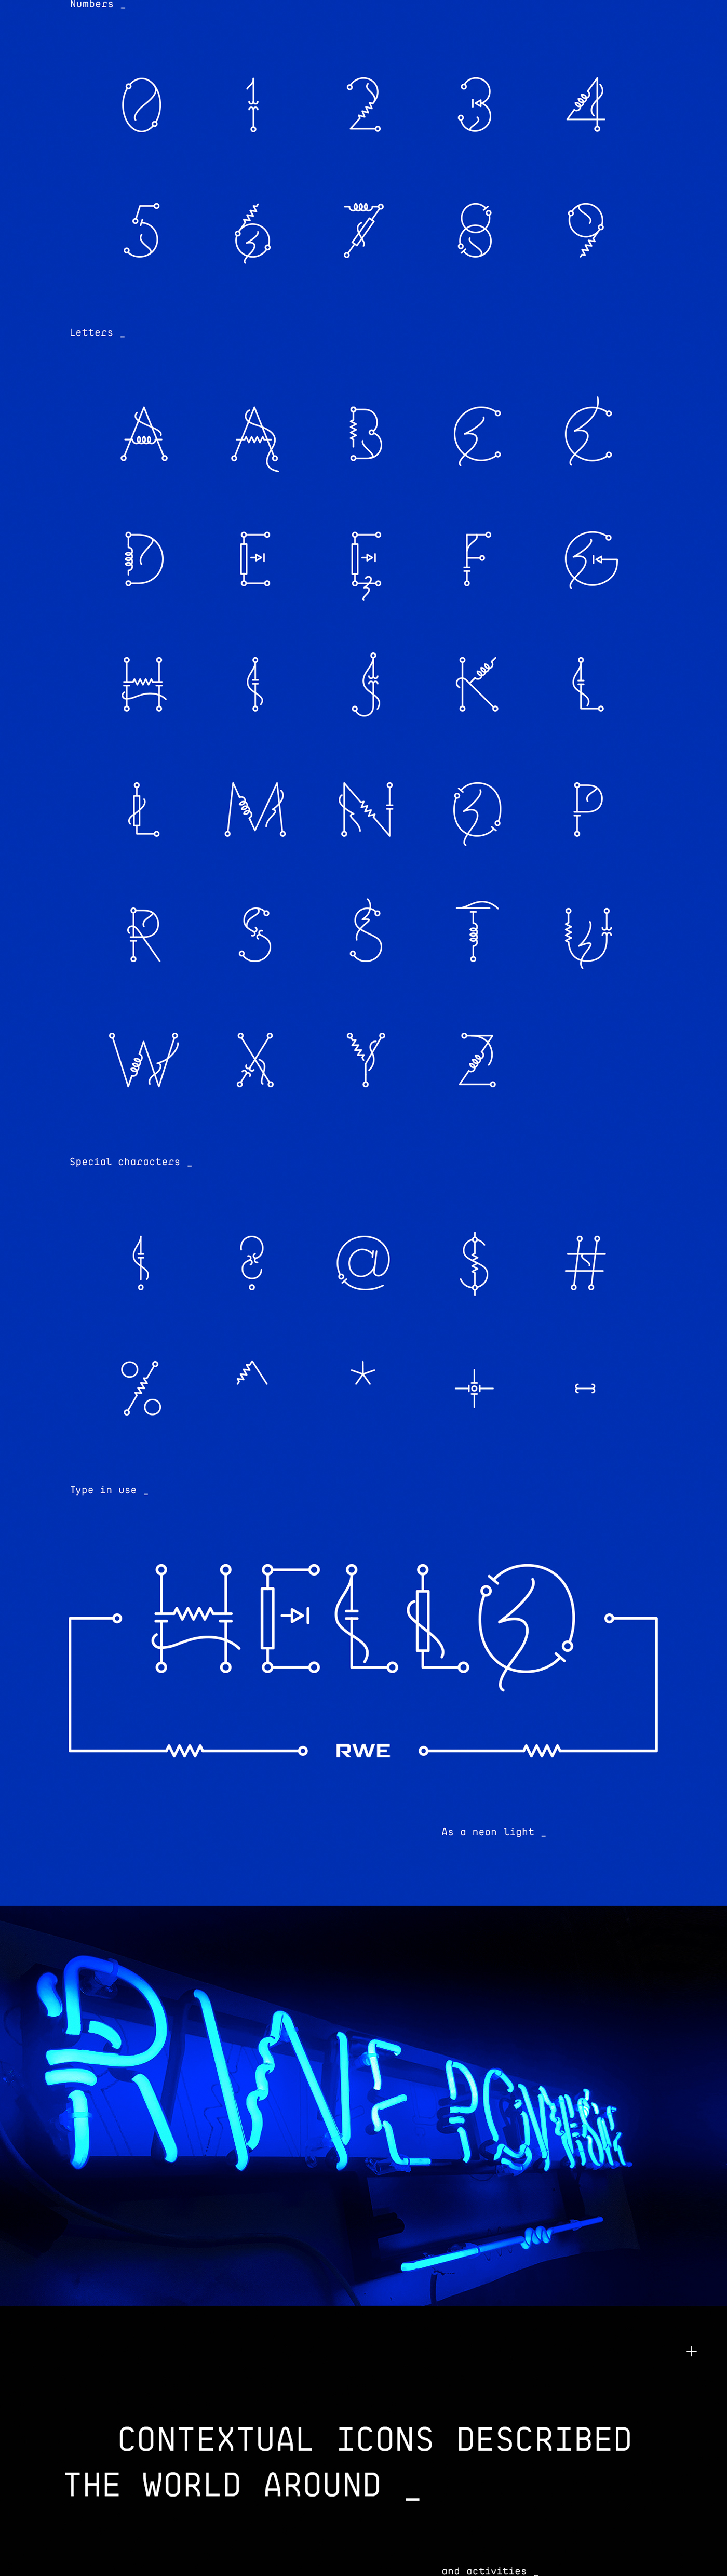 typography   design system neon font icons iconography RWE innogy włodarczyk walczuk